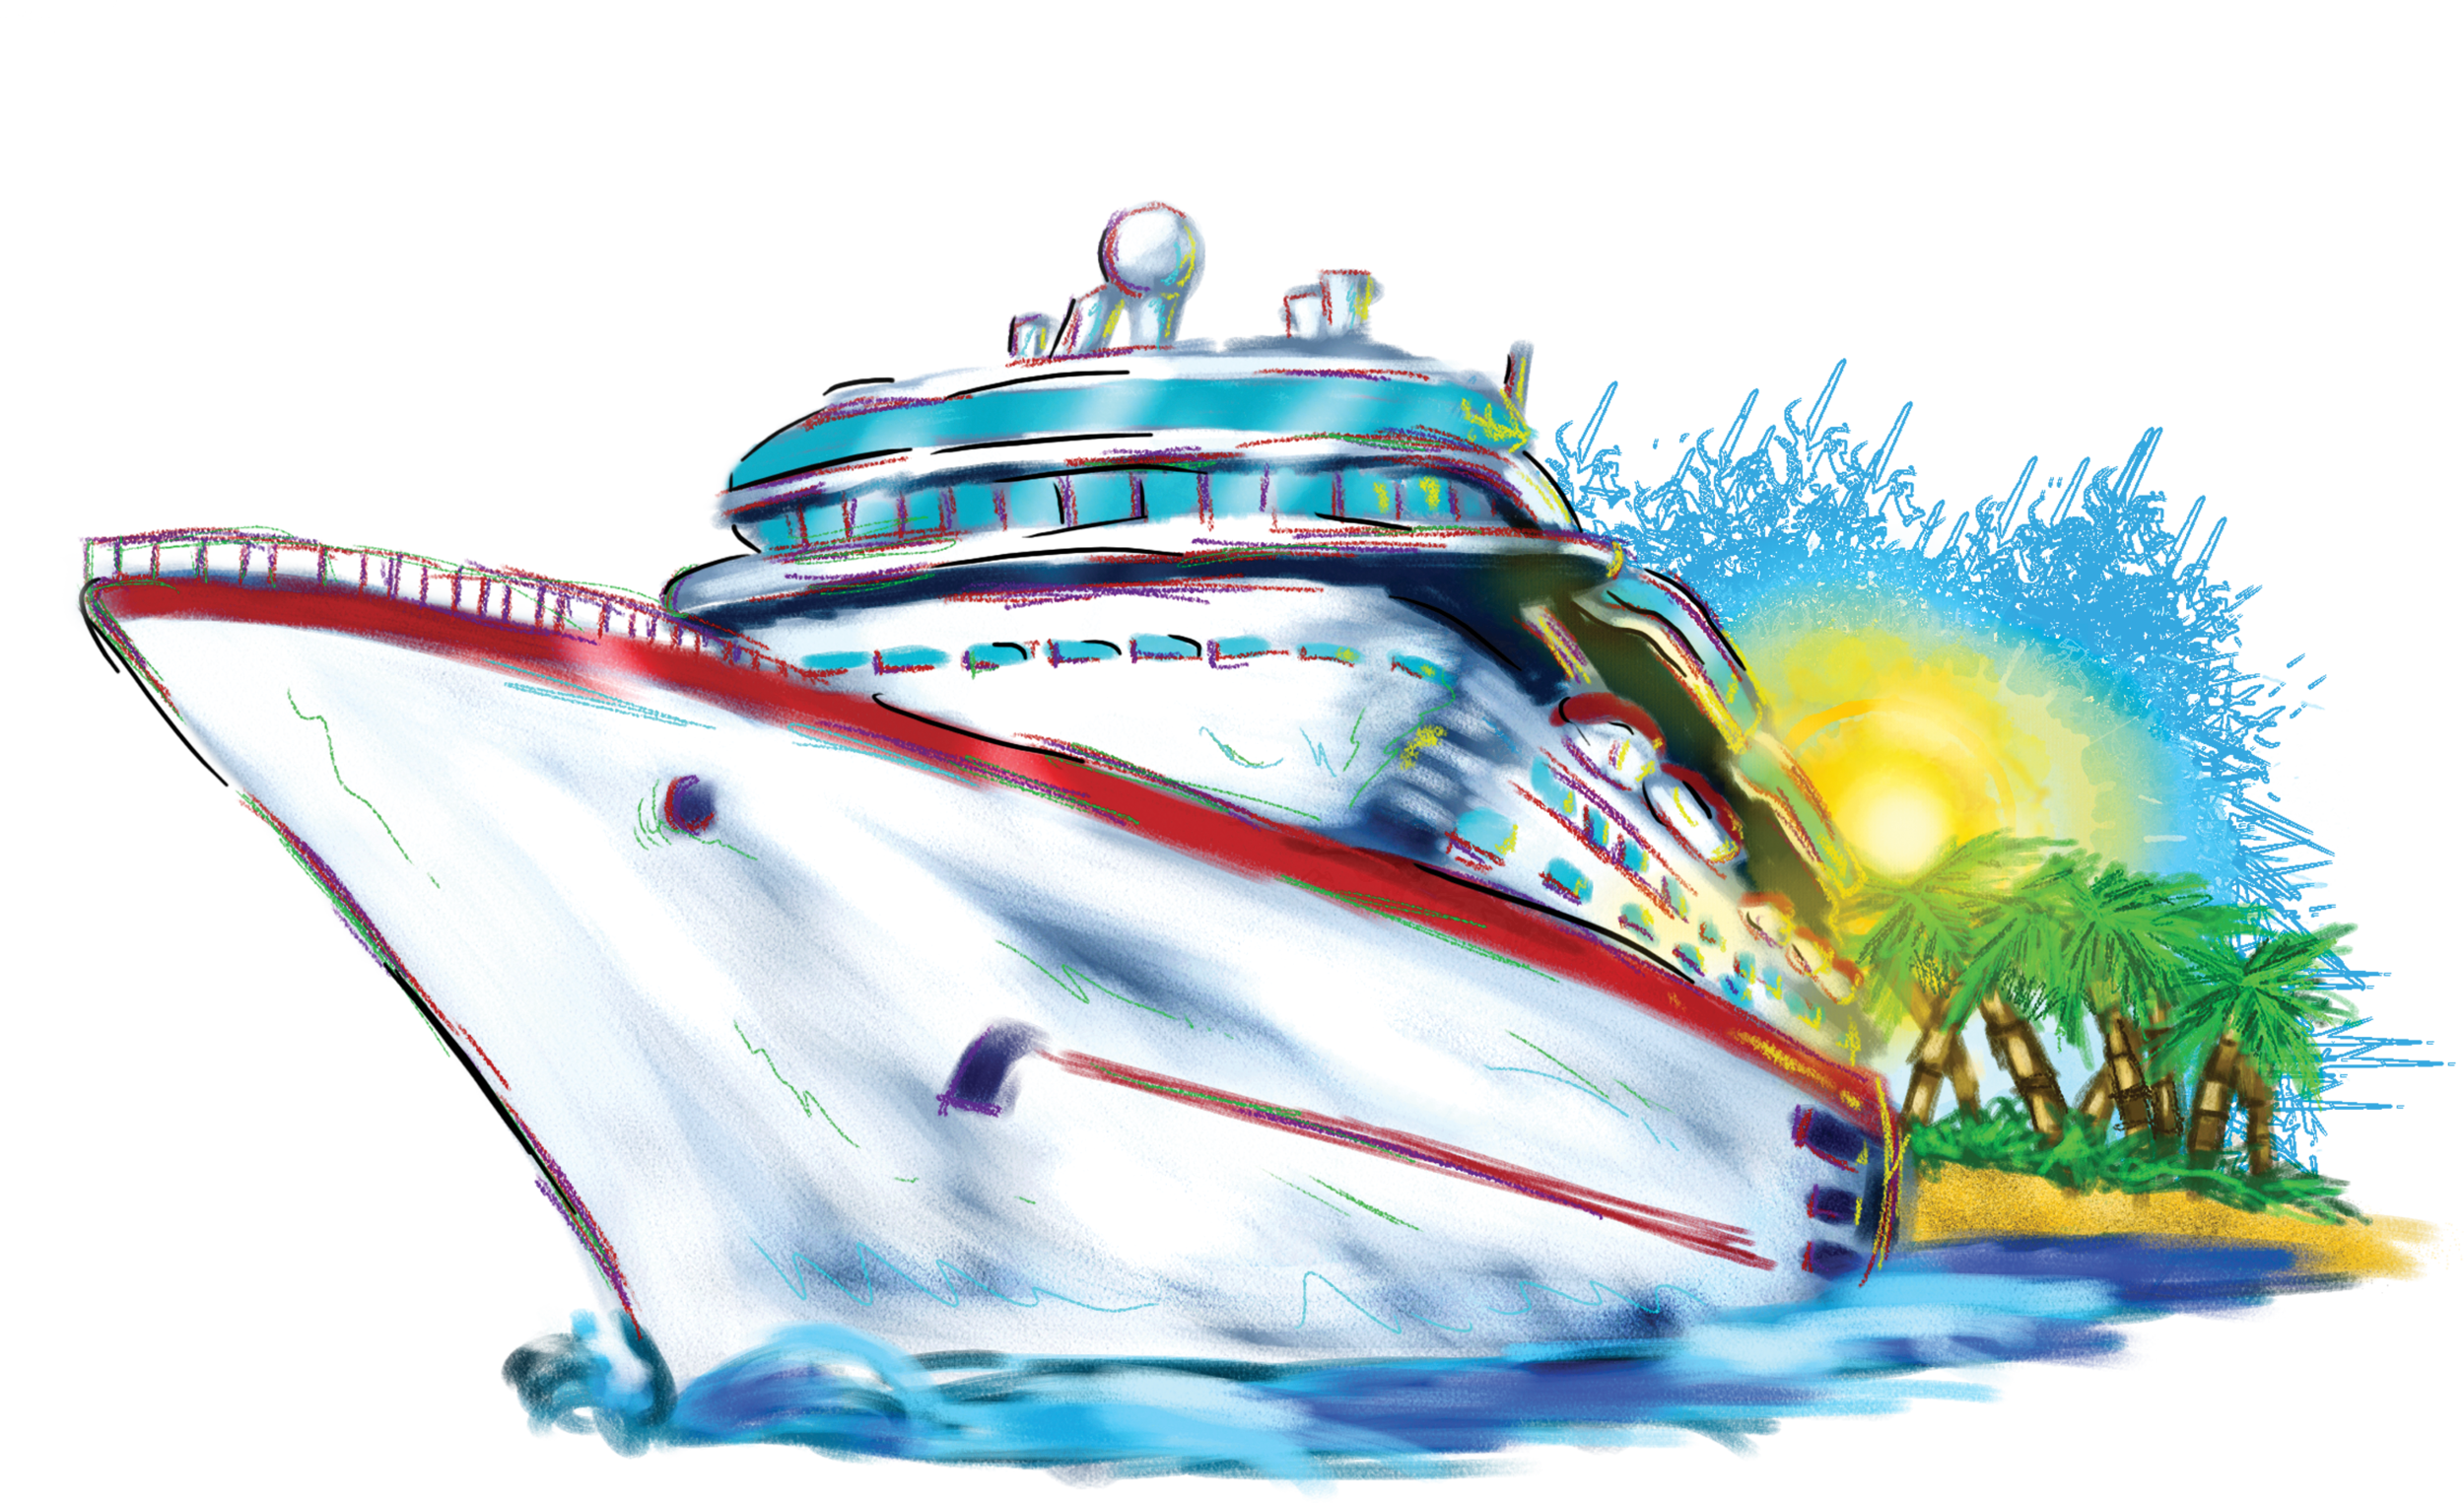 Free Cruise Ship Transparent, Download Free Cruise Ship Transparent png